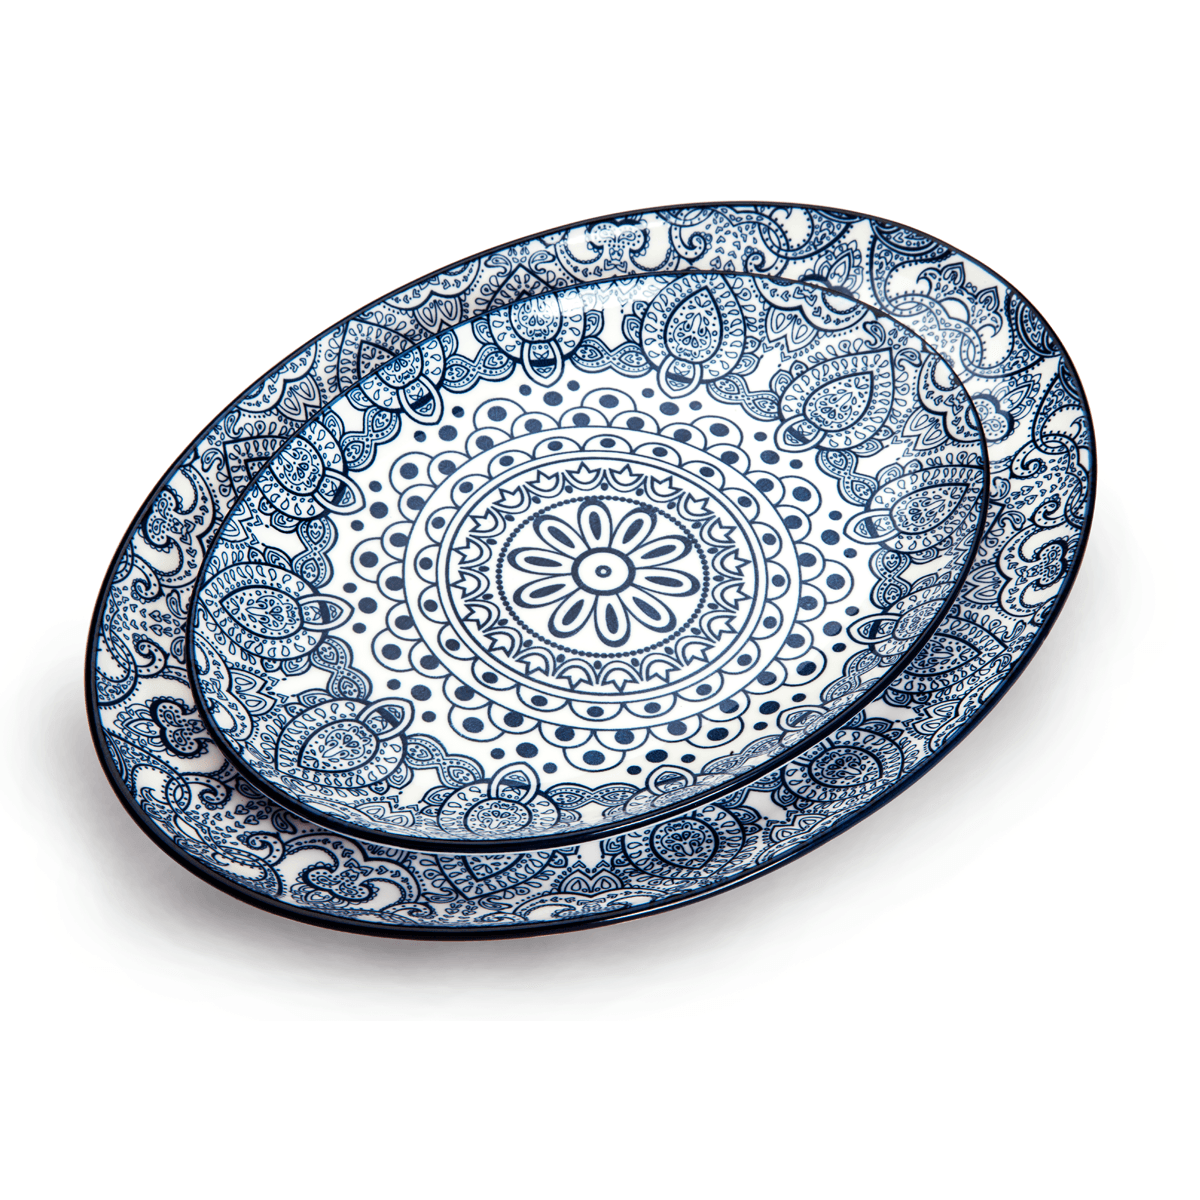 Che Brucia Arabesque Blue Porcelain Oval Plate 20 cm / 8" Blue Ivory Porcelain